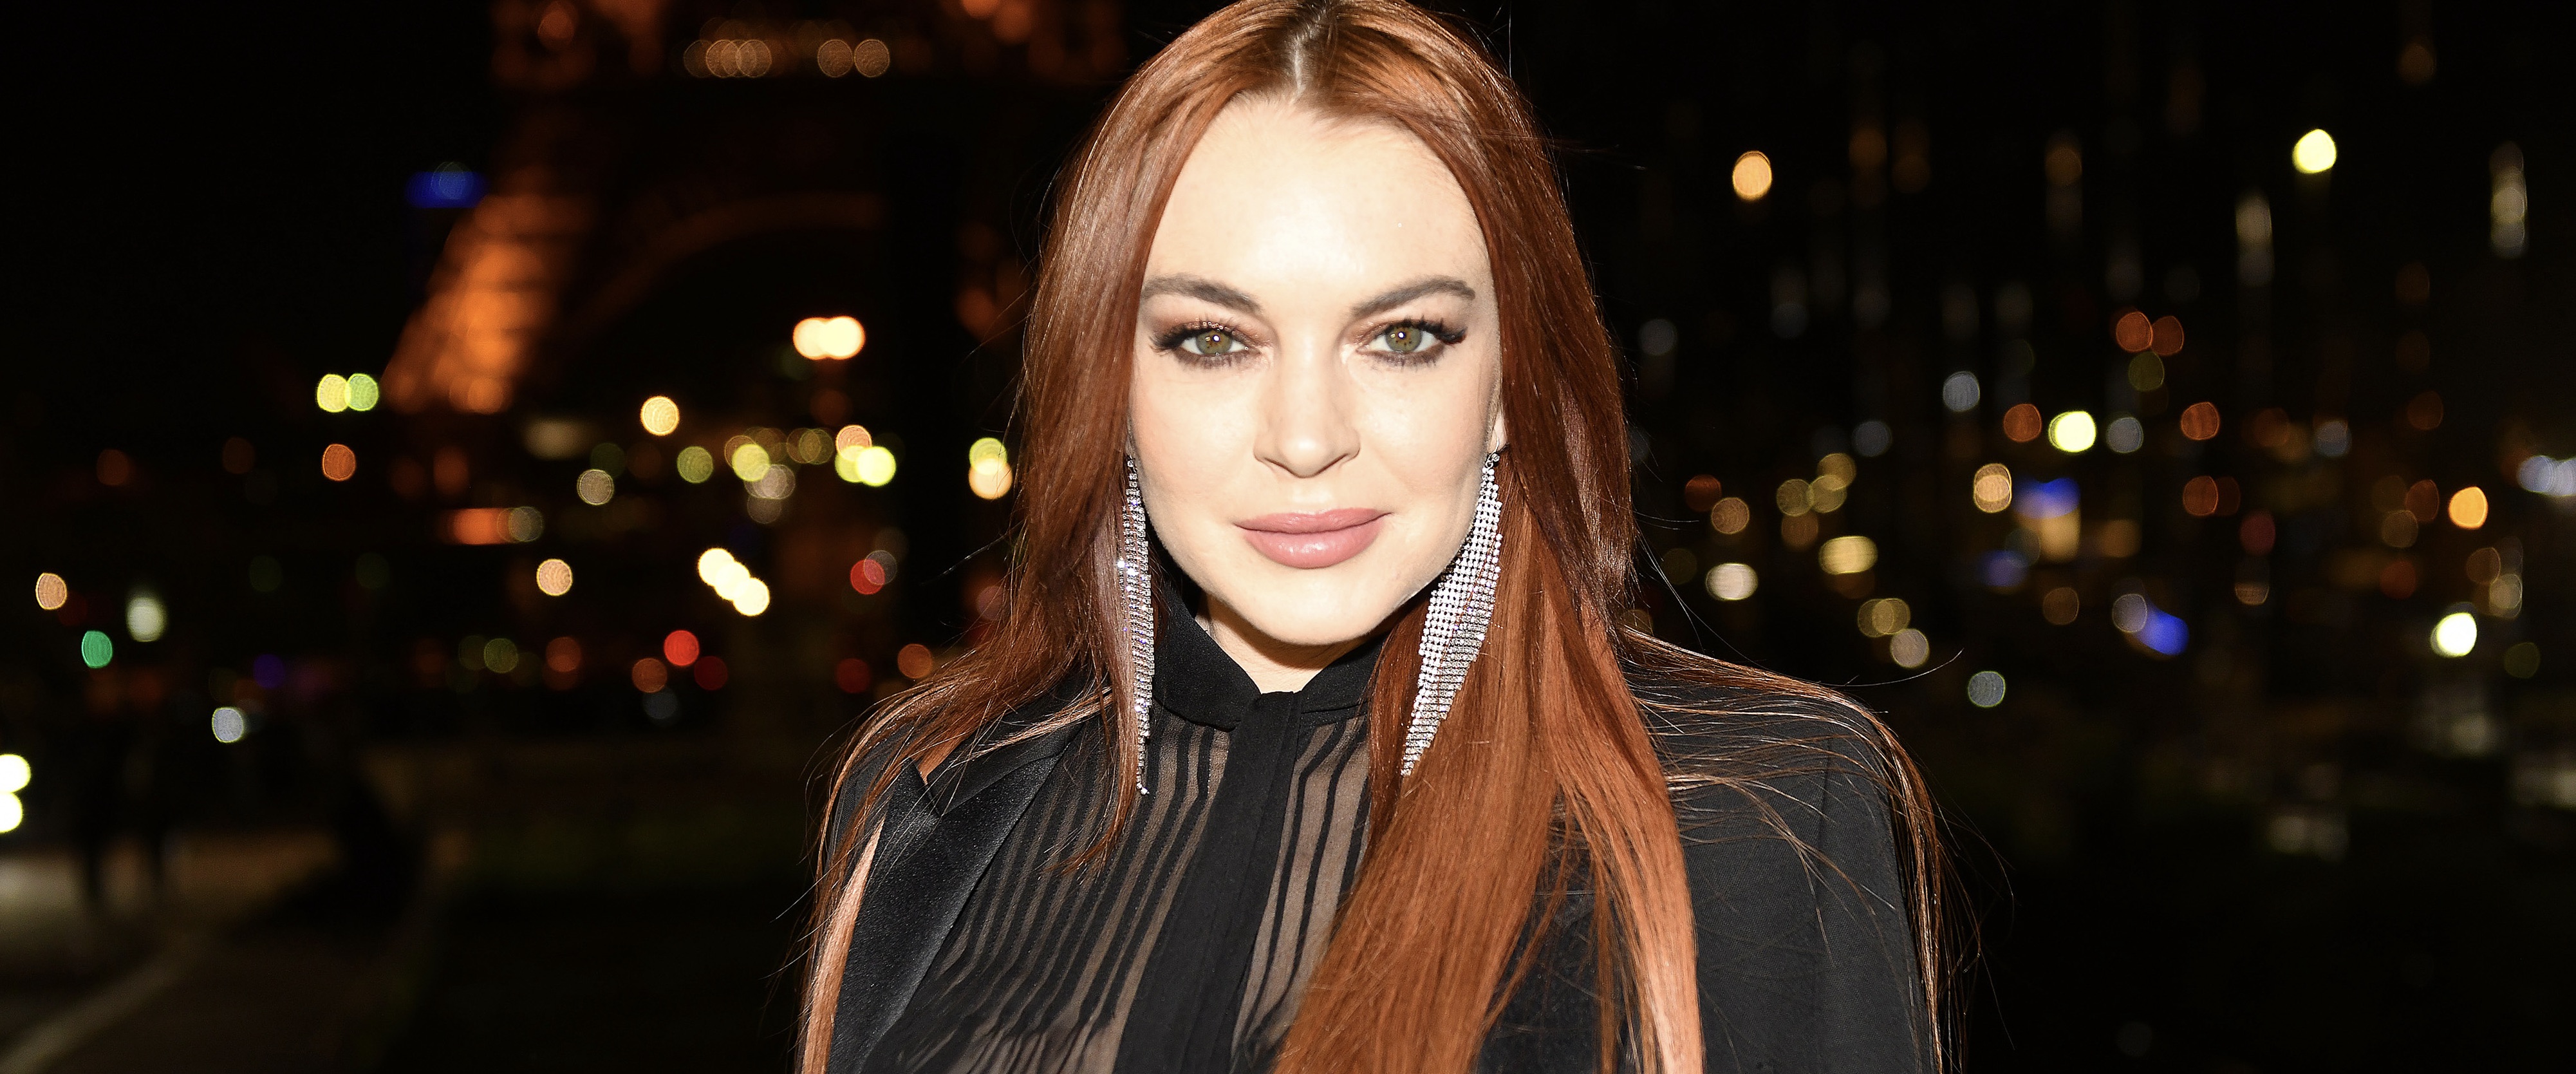 Lindsay Lohan is bevallen van een zoon: 'Familie is dolgelukkig'